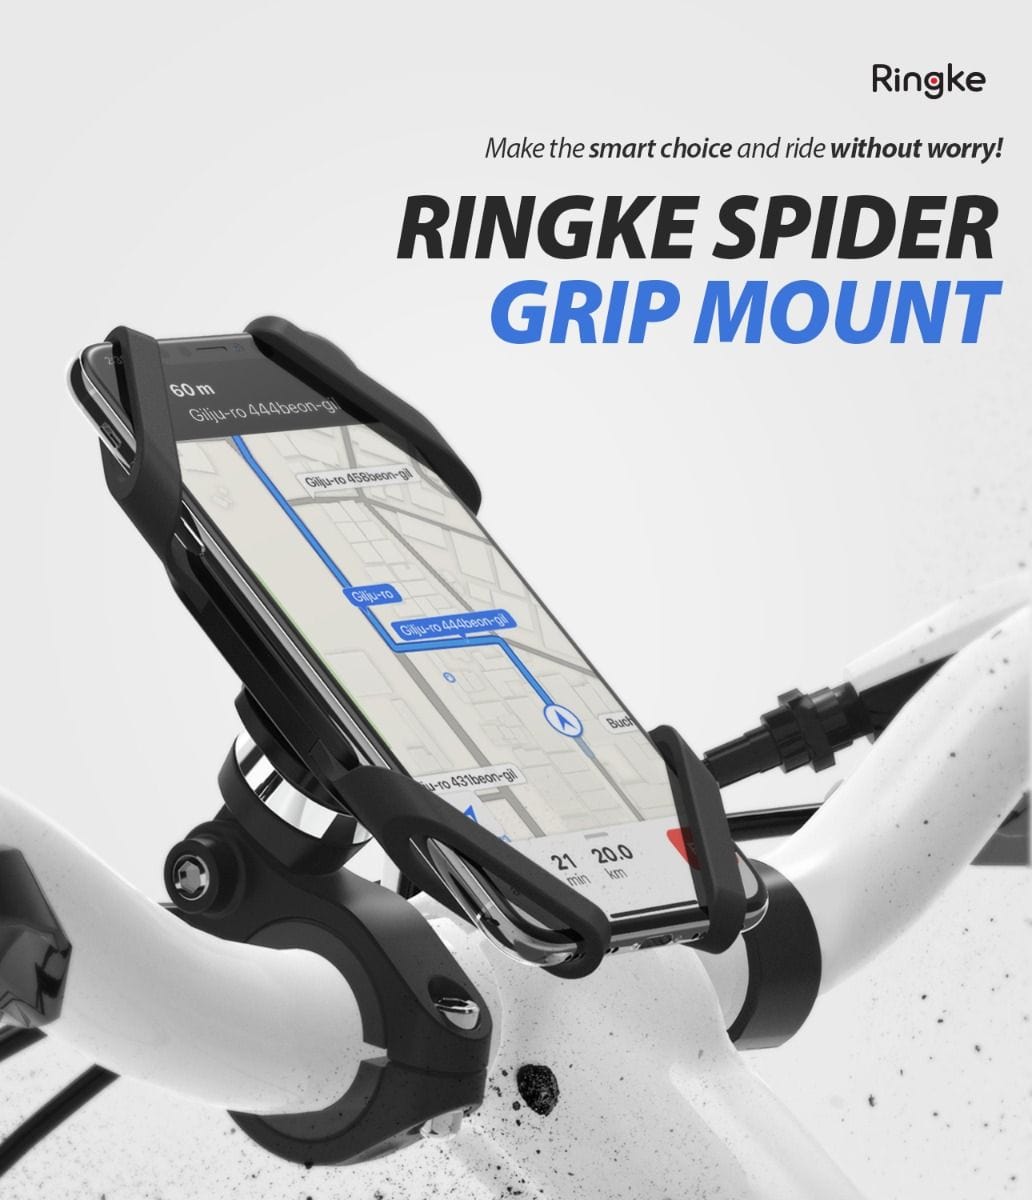 Ringke Spider Grip Mount for Bike